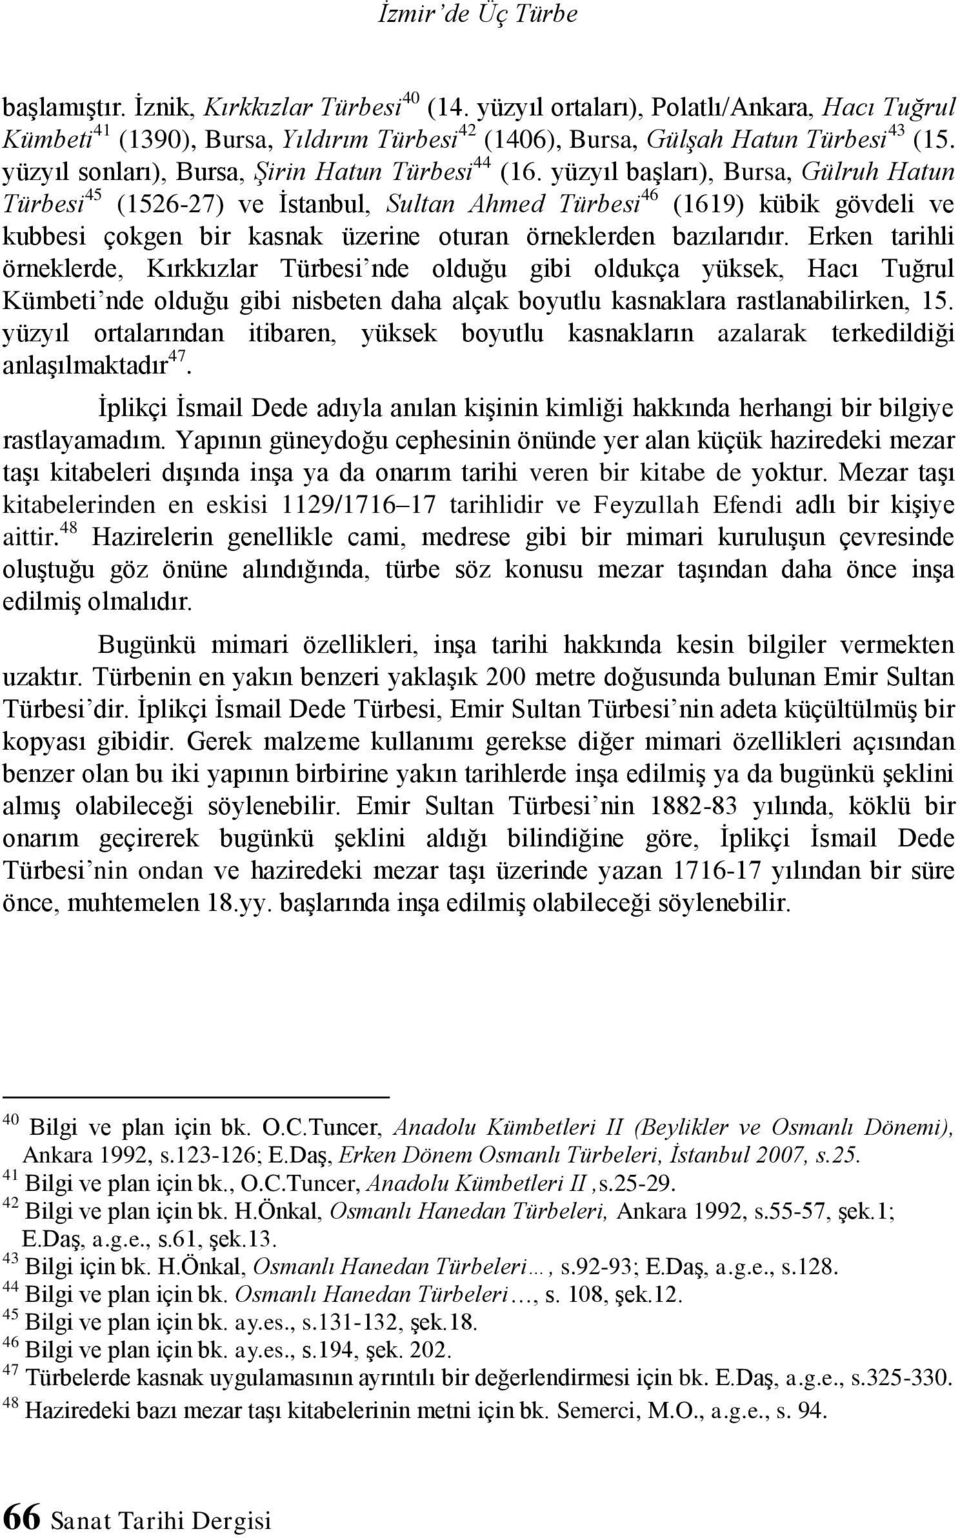 yüzyıl başları), Bursa, Gülruh Hatun Türbesi 45 (1526-27) ve İstanbul, Sultan Ahmed Türbesi 46 (1619) kübik gövdeli ve kubbesi çokgen bir kasnak üzerine oturan örneklerden bazılarıdır.